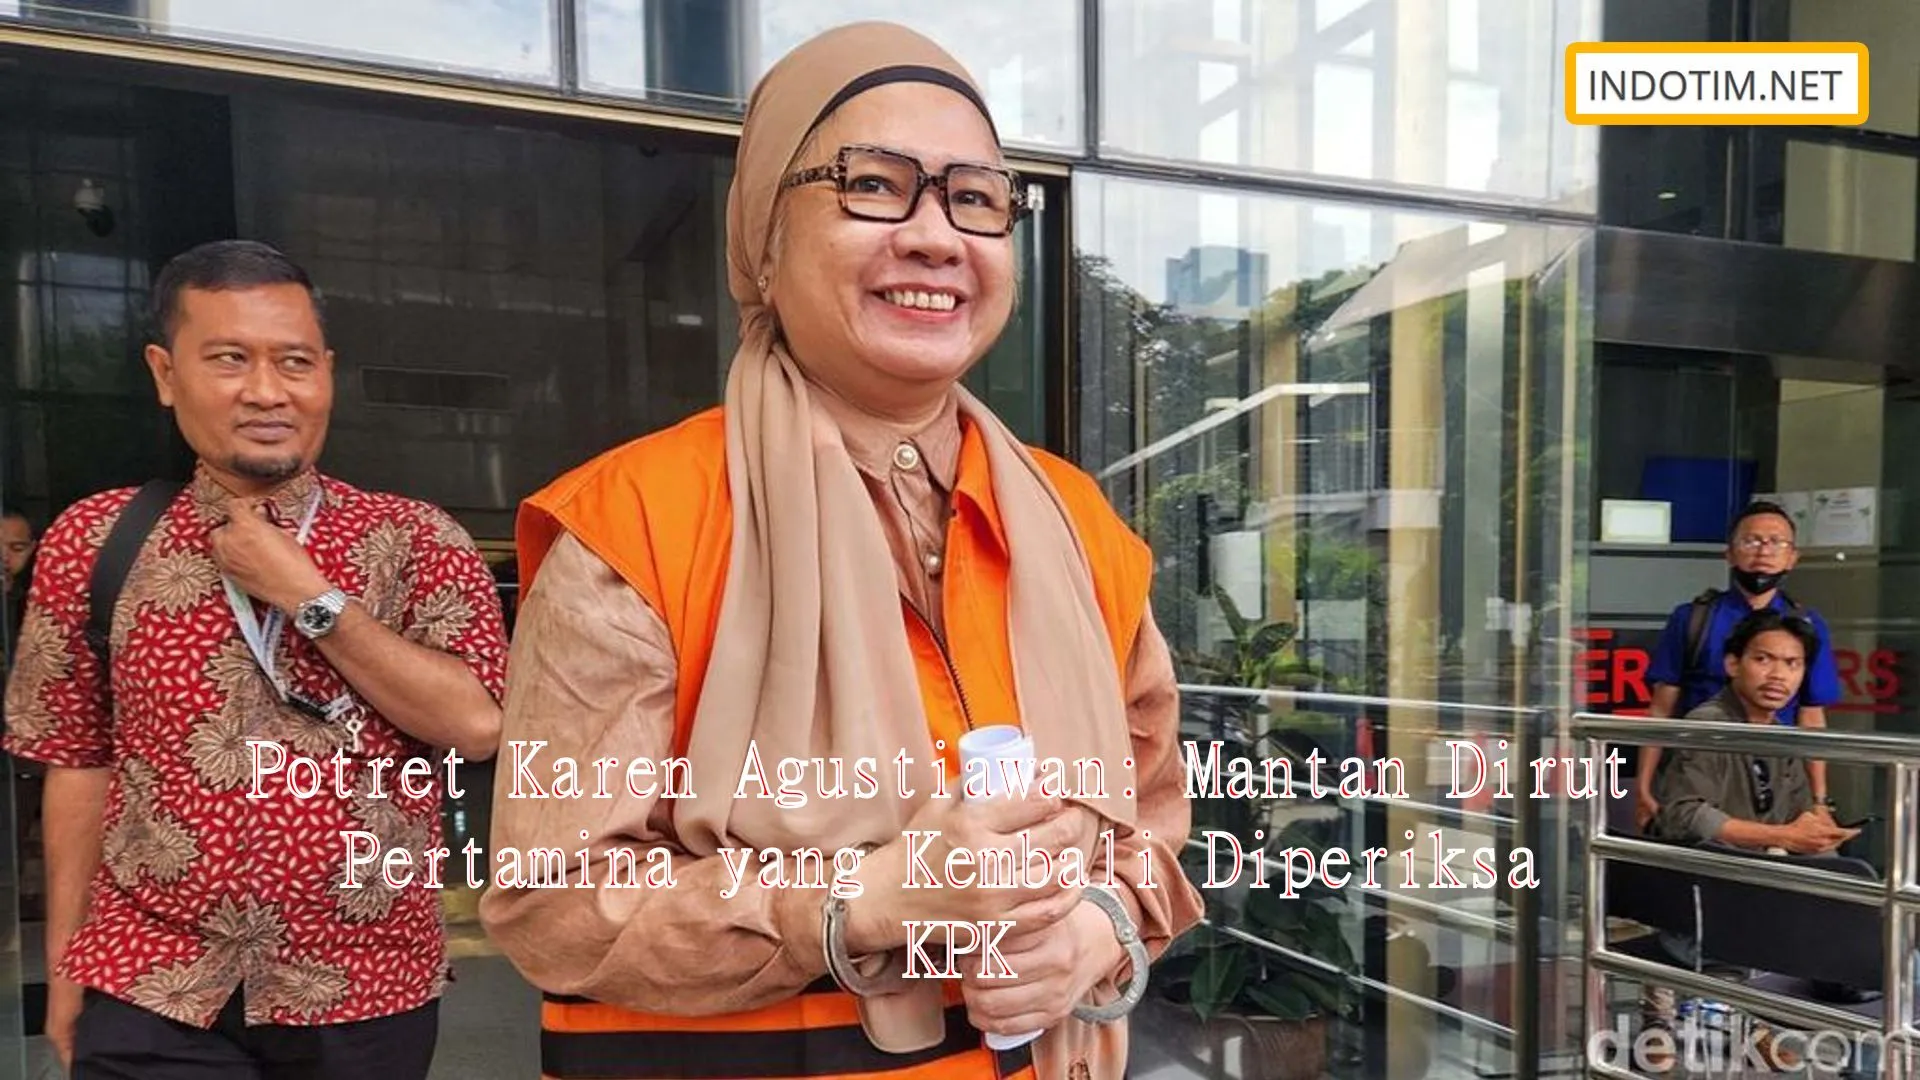 Potret Karen Agustiawan: Mantan Dirut Pertamina yang Kembali Diperiksa KPK